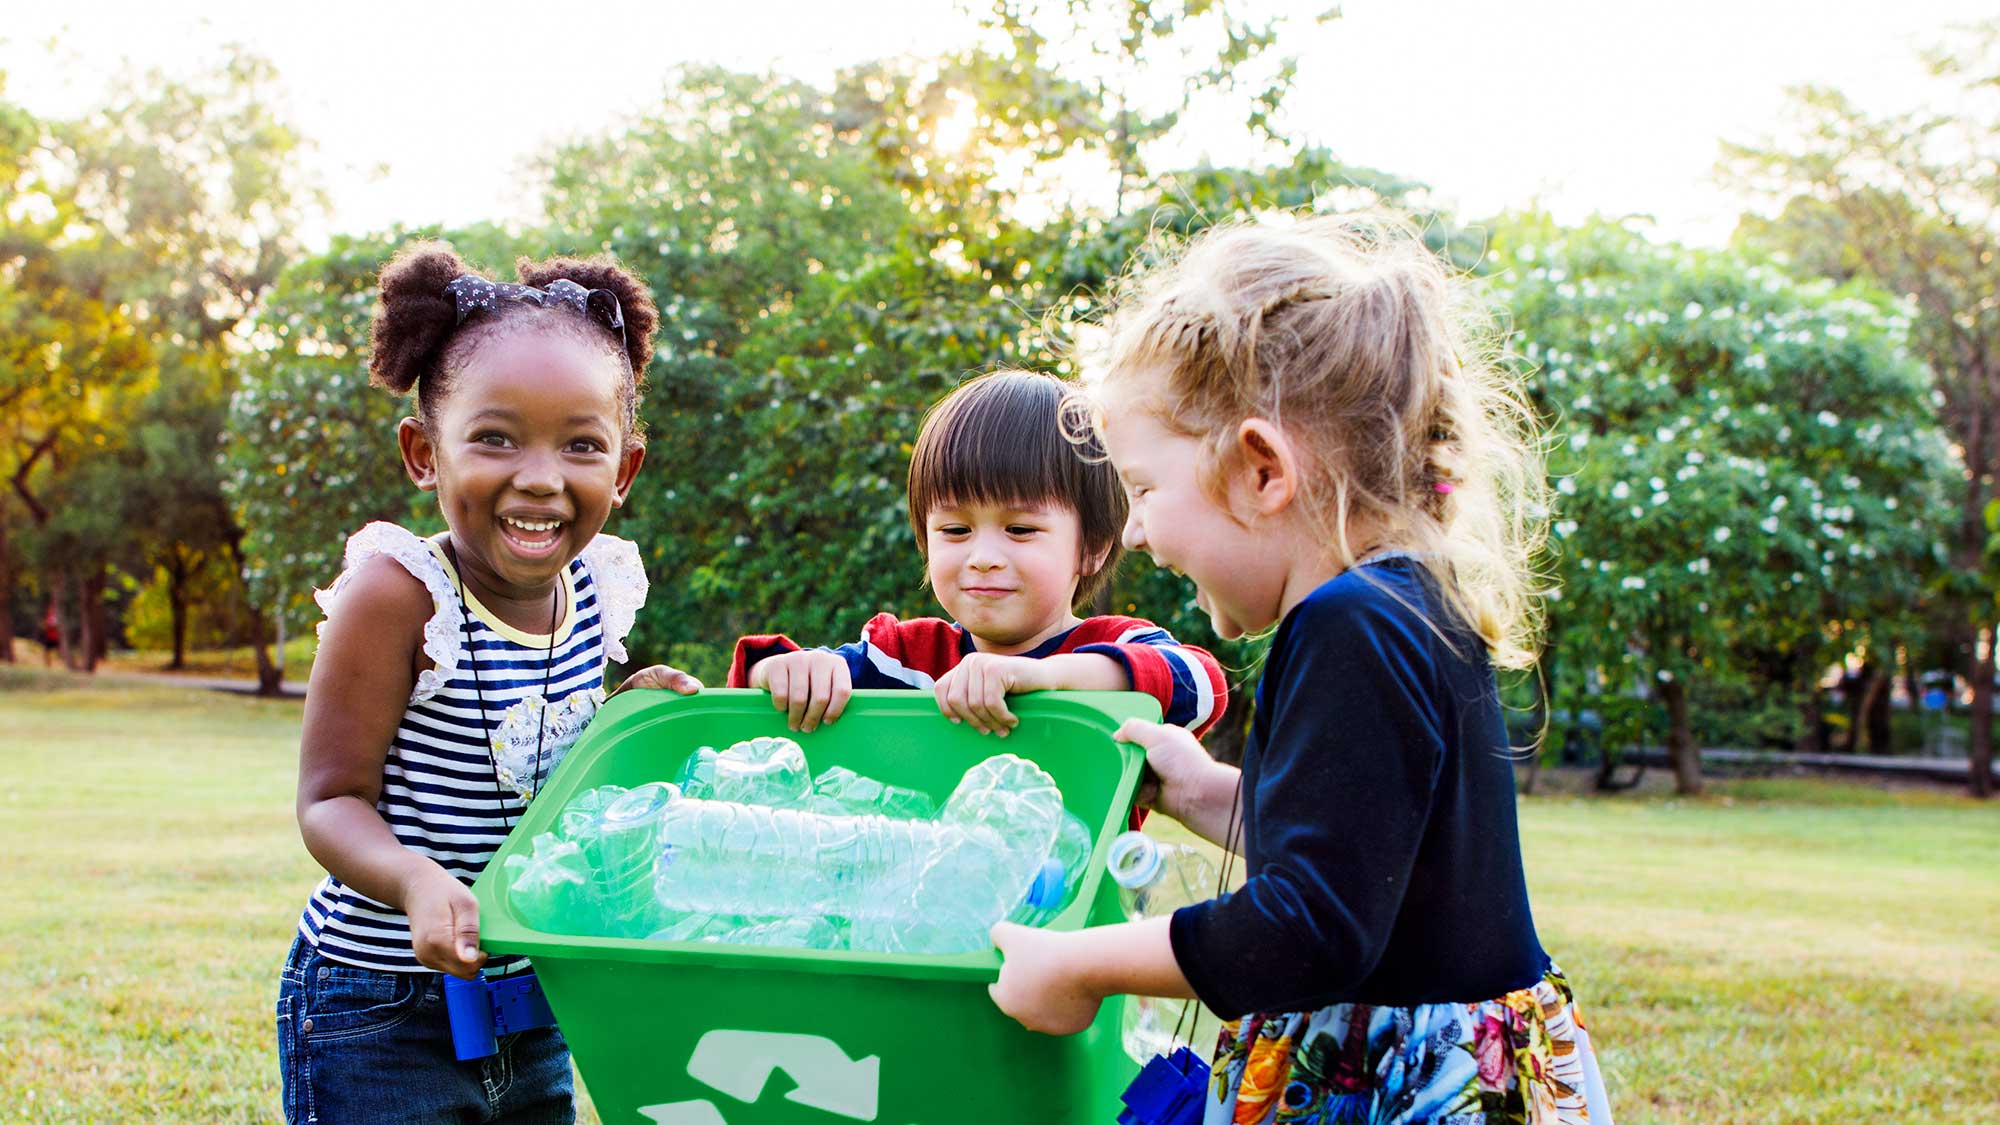 Bambini che raccolgono rifiuti riciclabili in un bidone verde. 